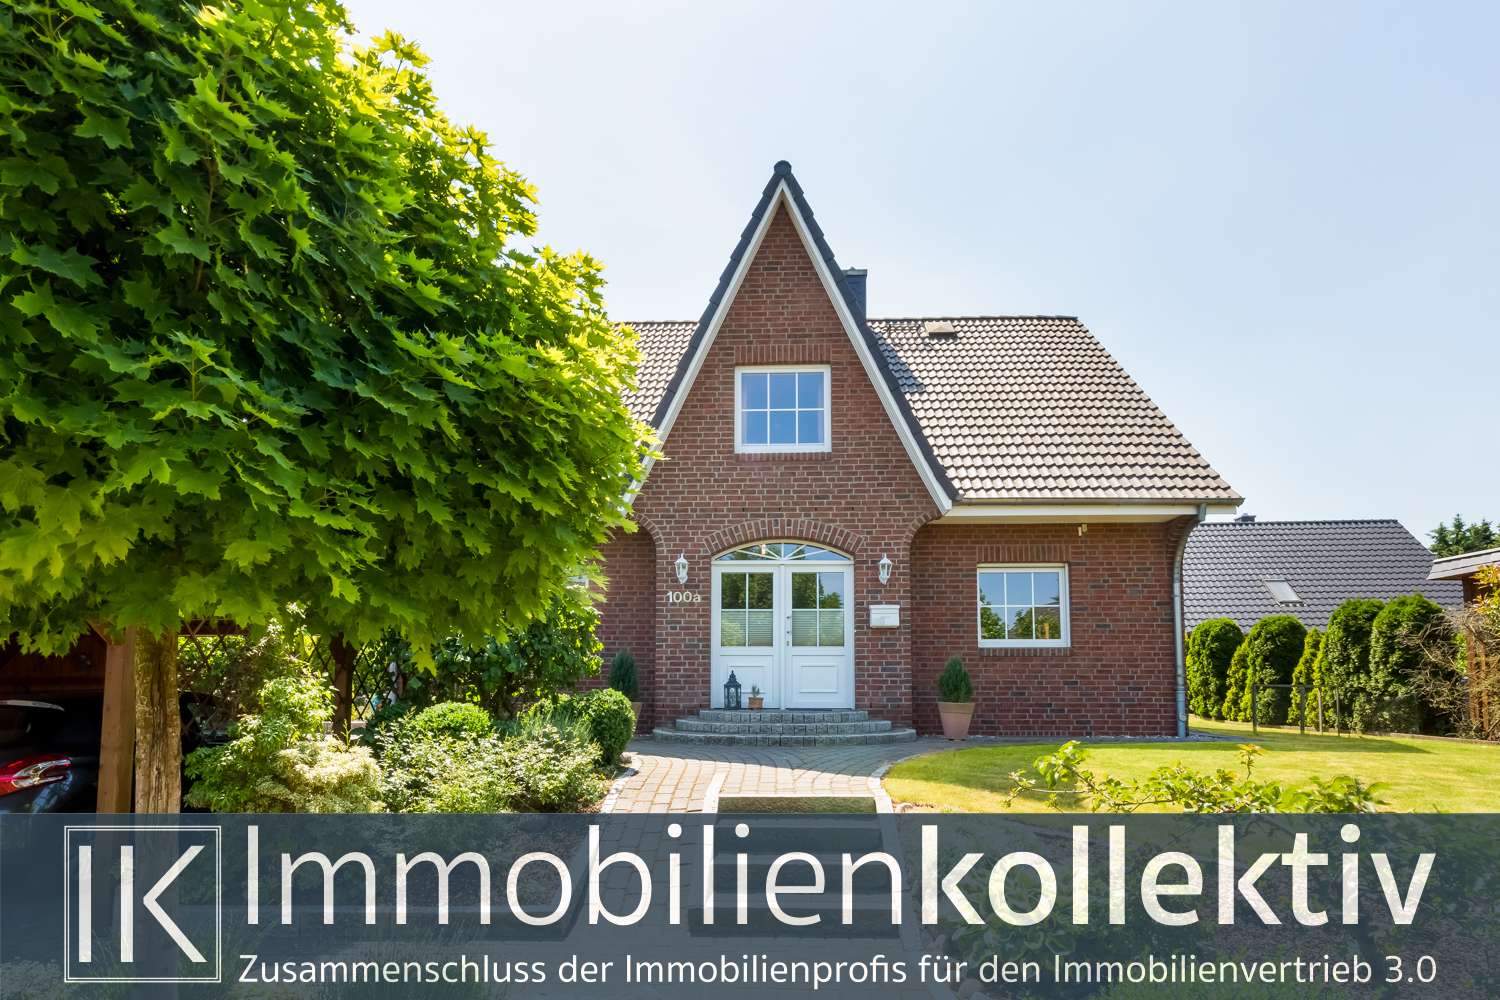 Ihr Immobilienmakler aus Seevetal beim Haus verkaufen in Fleestedt, Meckelfeld und Hittfeld